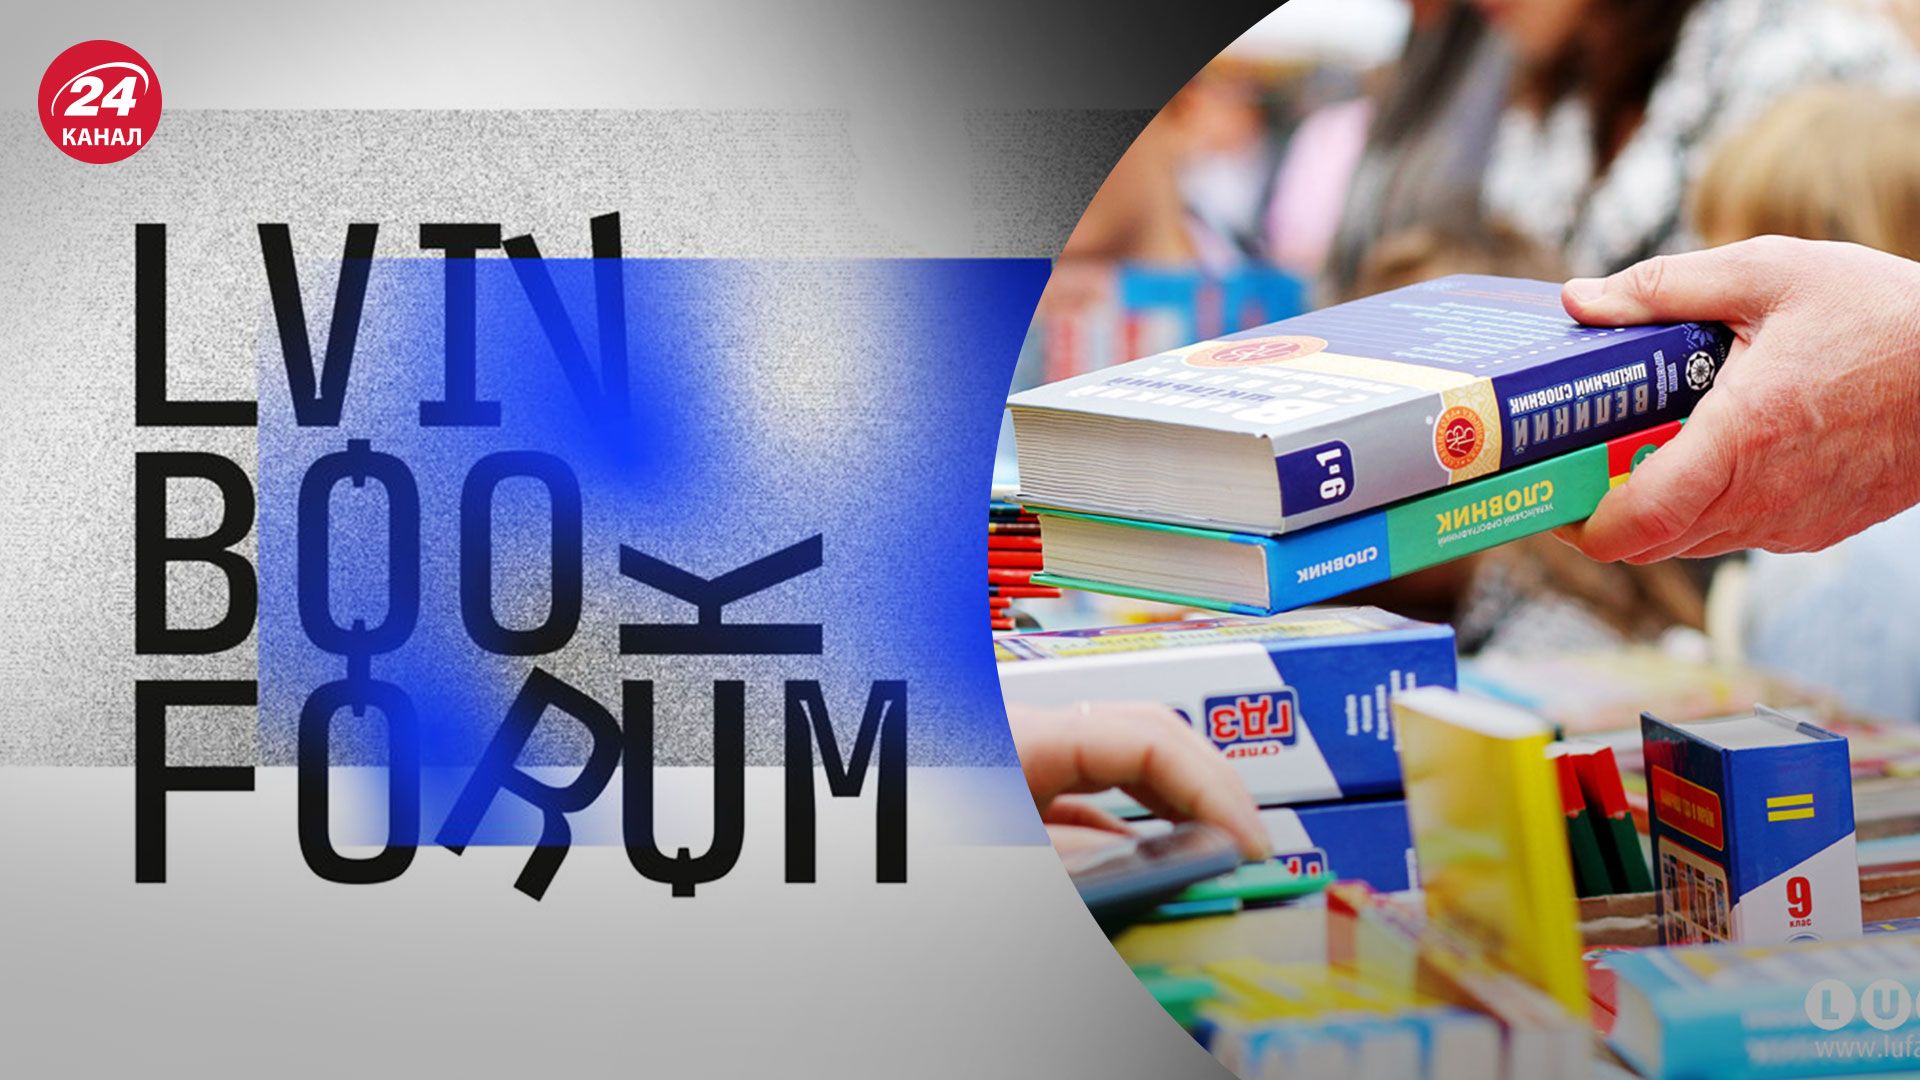 Bookforum 2022 - какие события 29 – го BookForum посетить - 24 канал - Образование